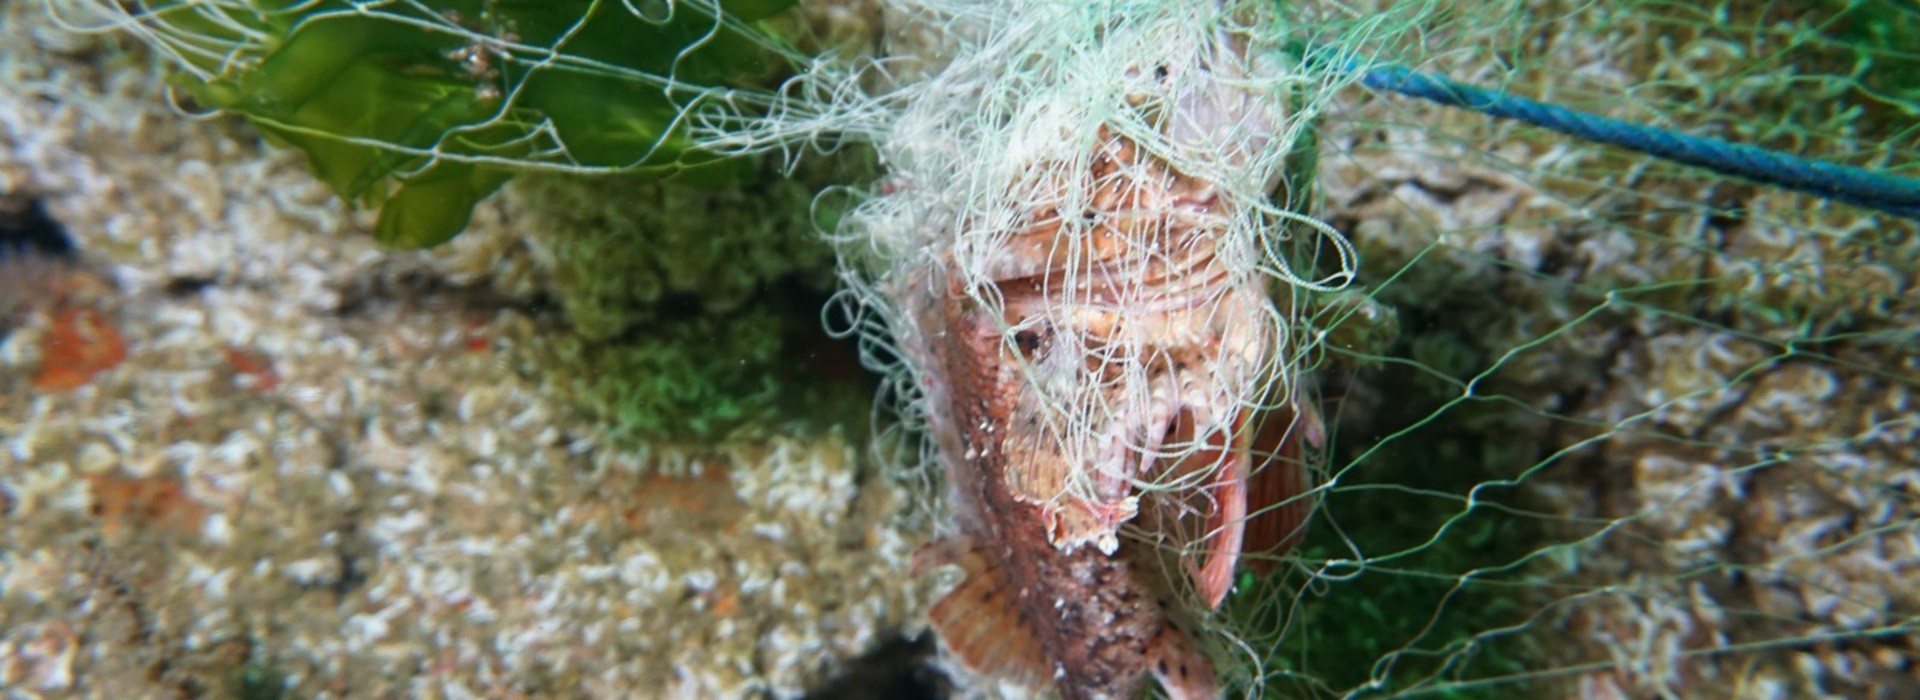 珊瑚礁捕获了鬼网